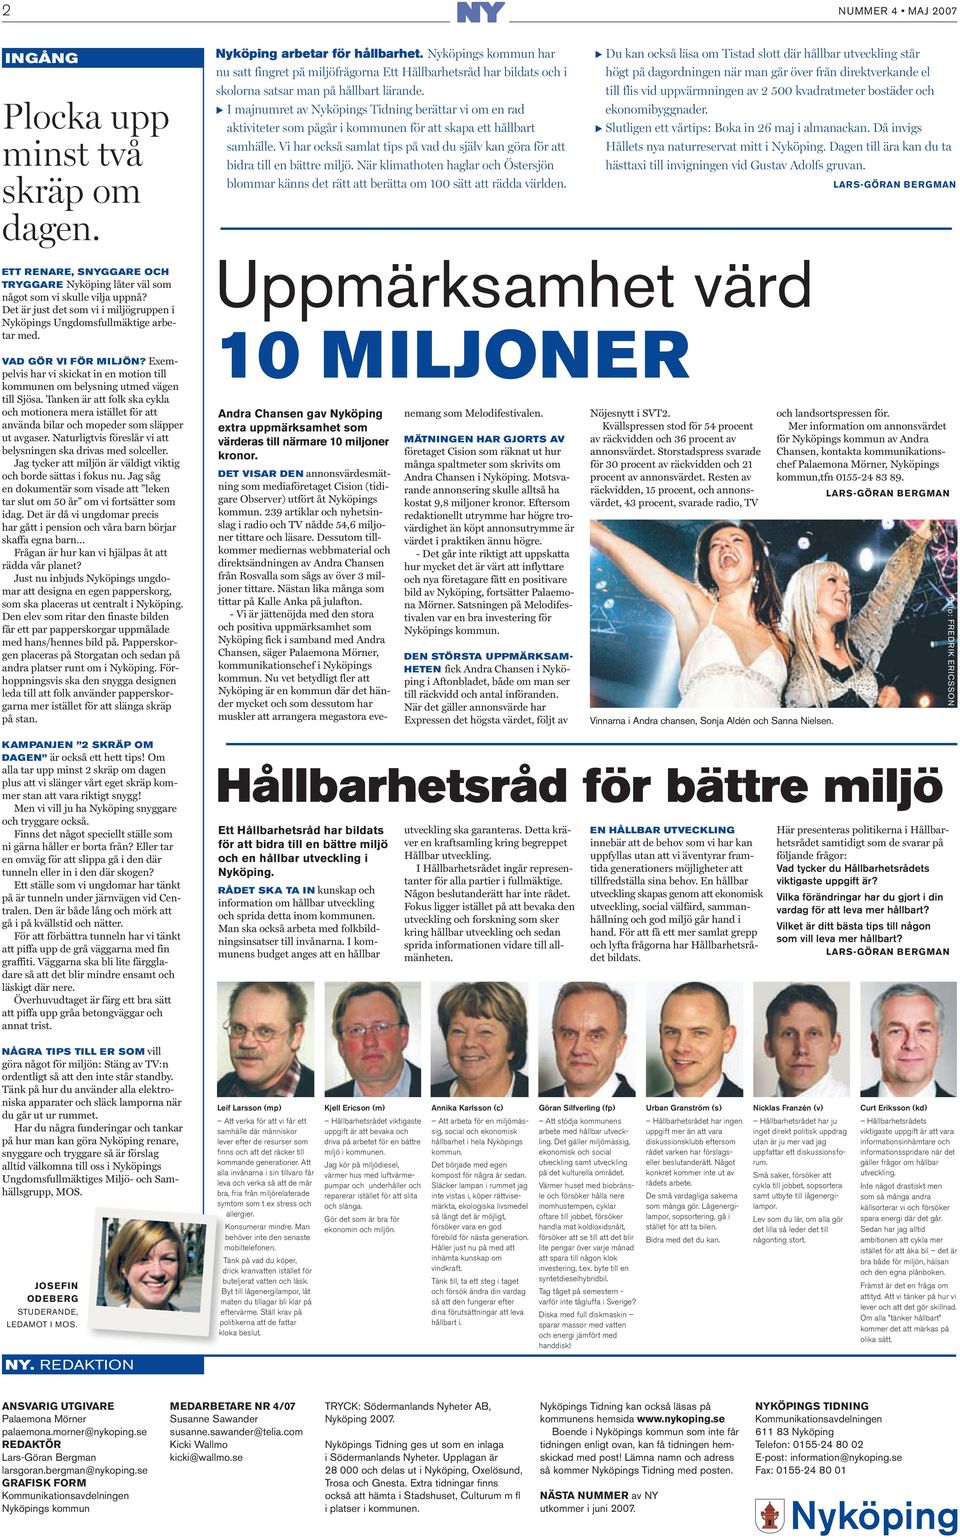 E I majnumret av Nyköpings Tidning berättar vi om en rad aktiviteter som pågår i kommunen för att skapa ett hållbart samhälle.